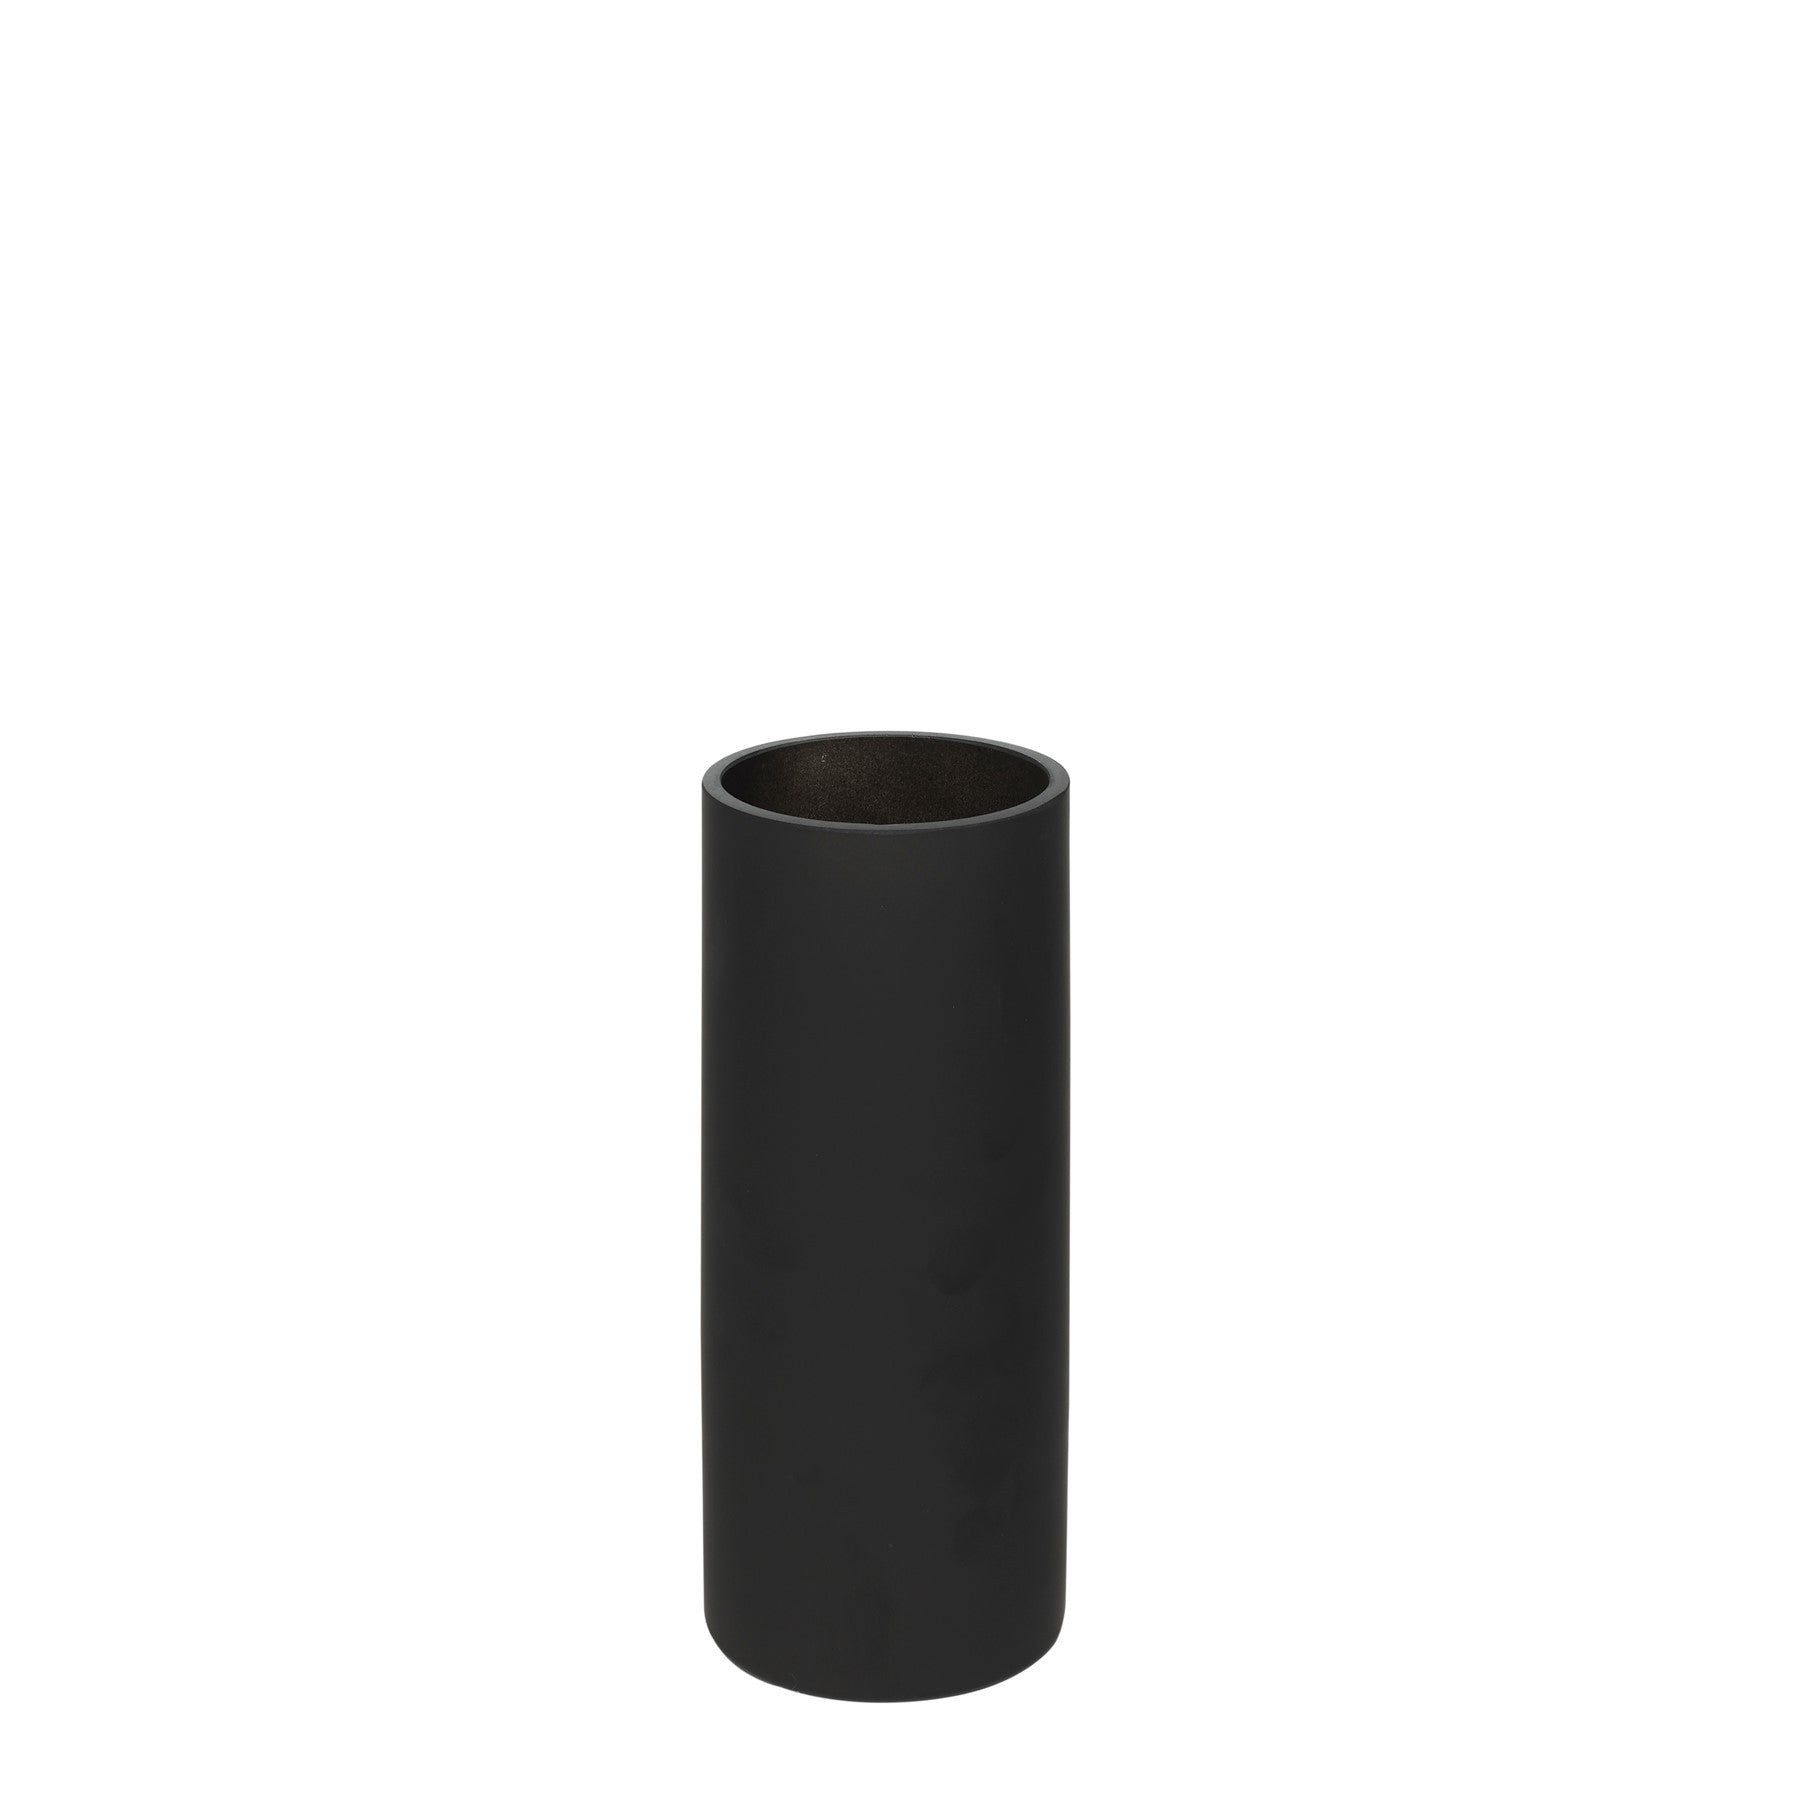 View Matt Black Glass Cylinder Vase 25cm information